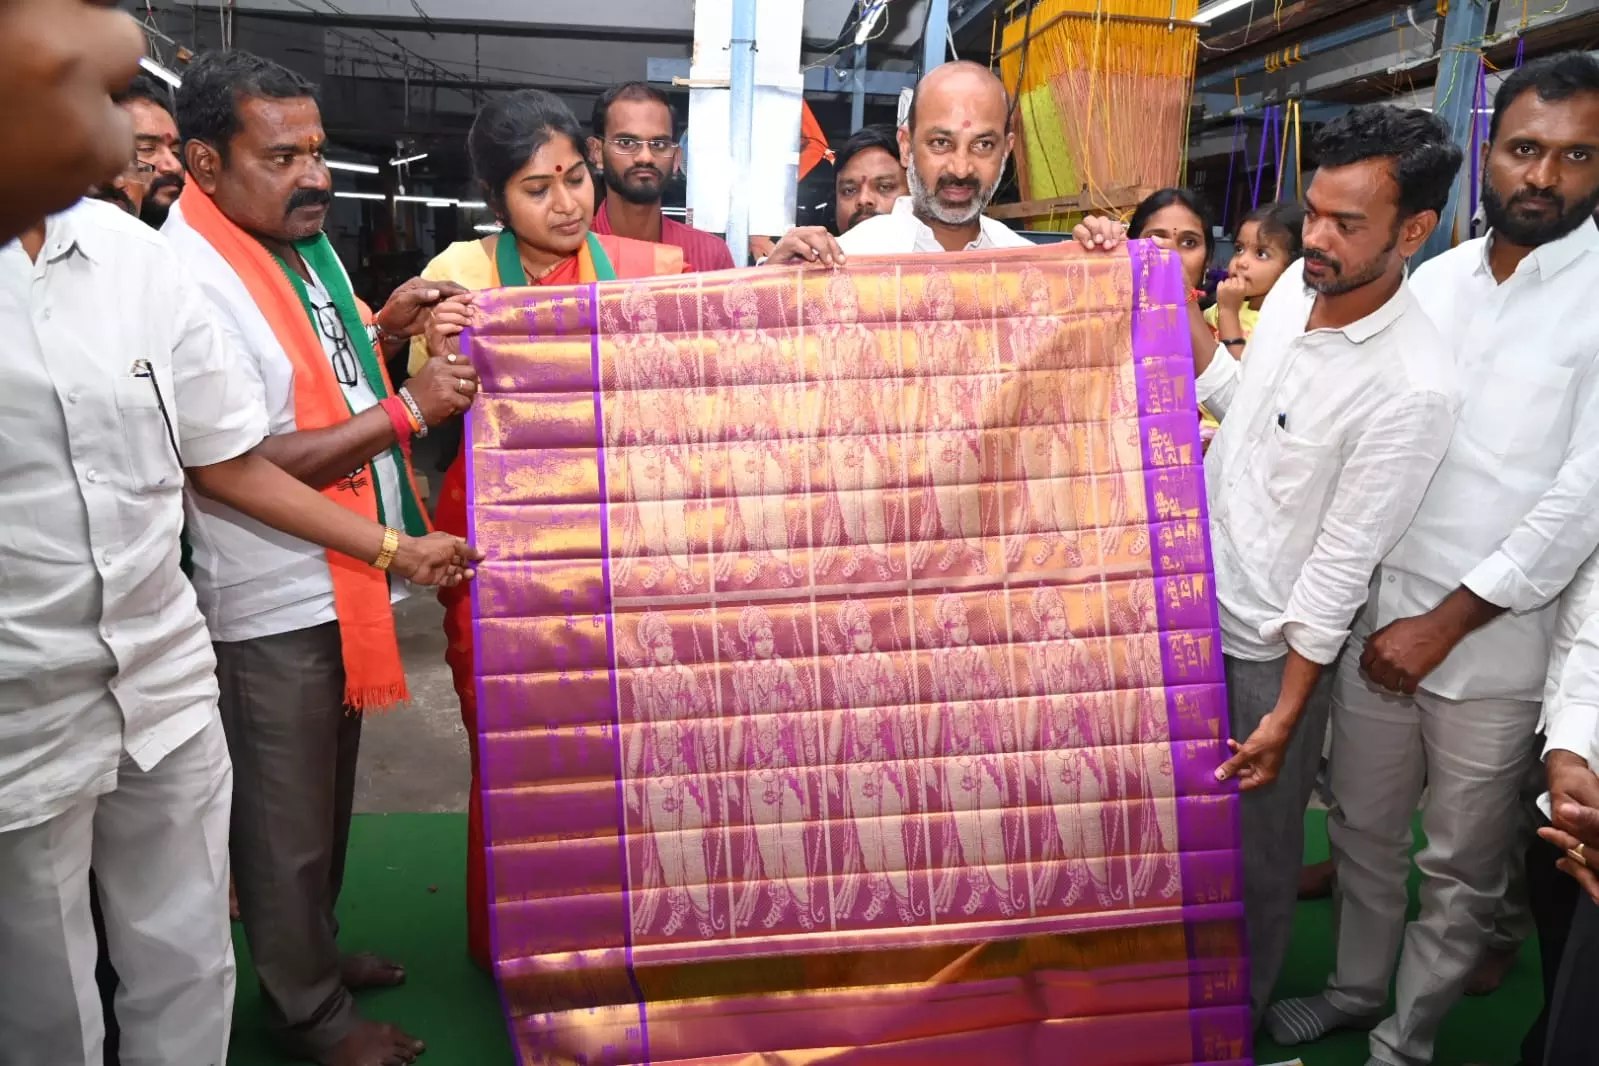 Sircilla weaver to offer gold sari to Lord Rama in Ayodhya